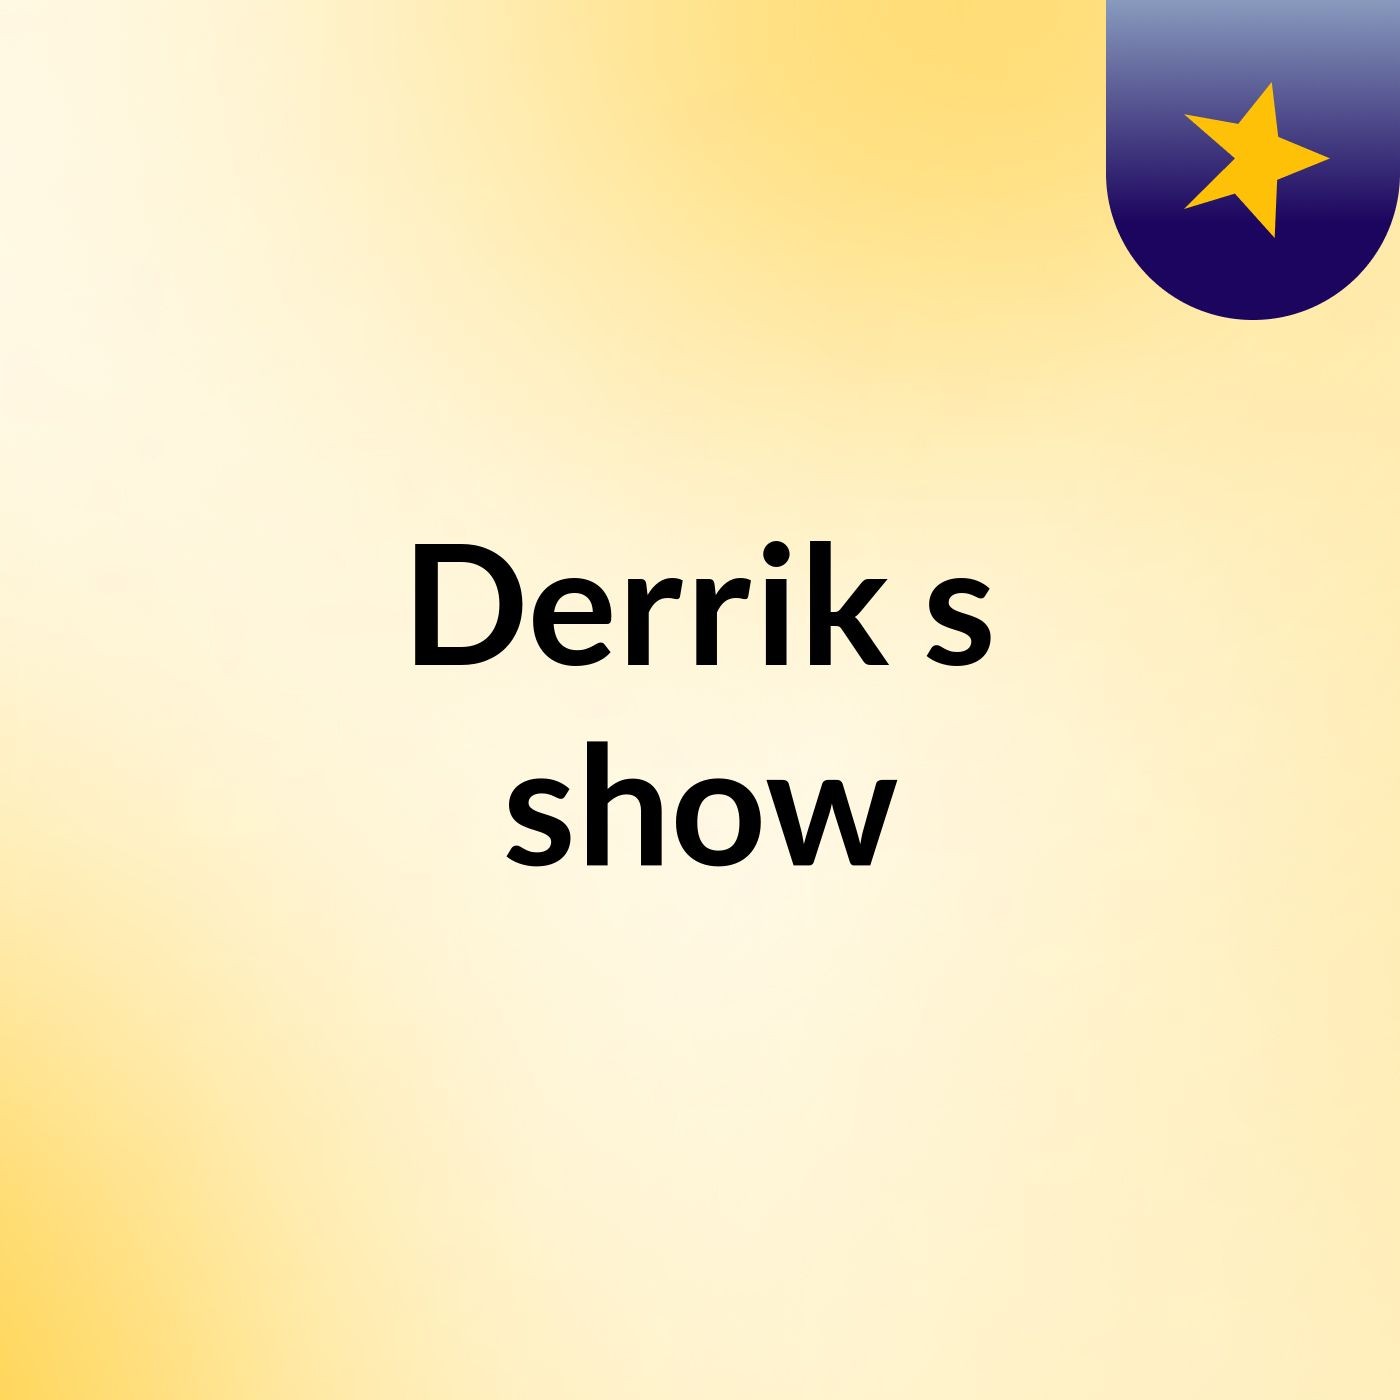 Derrik's show